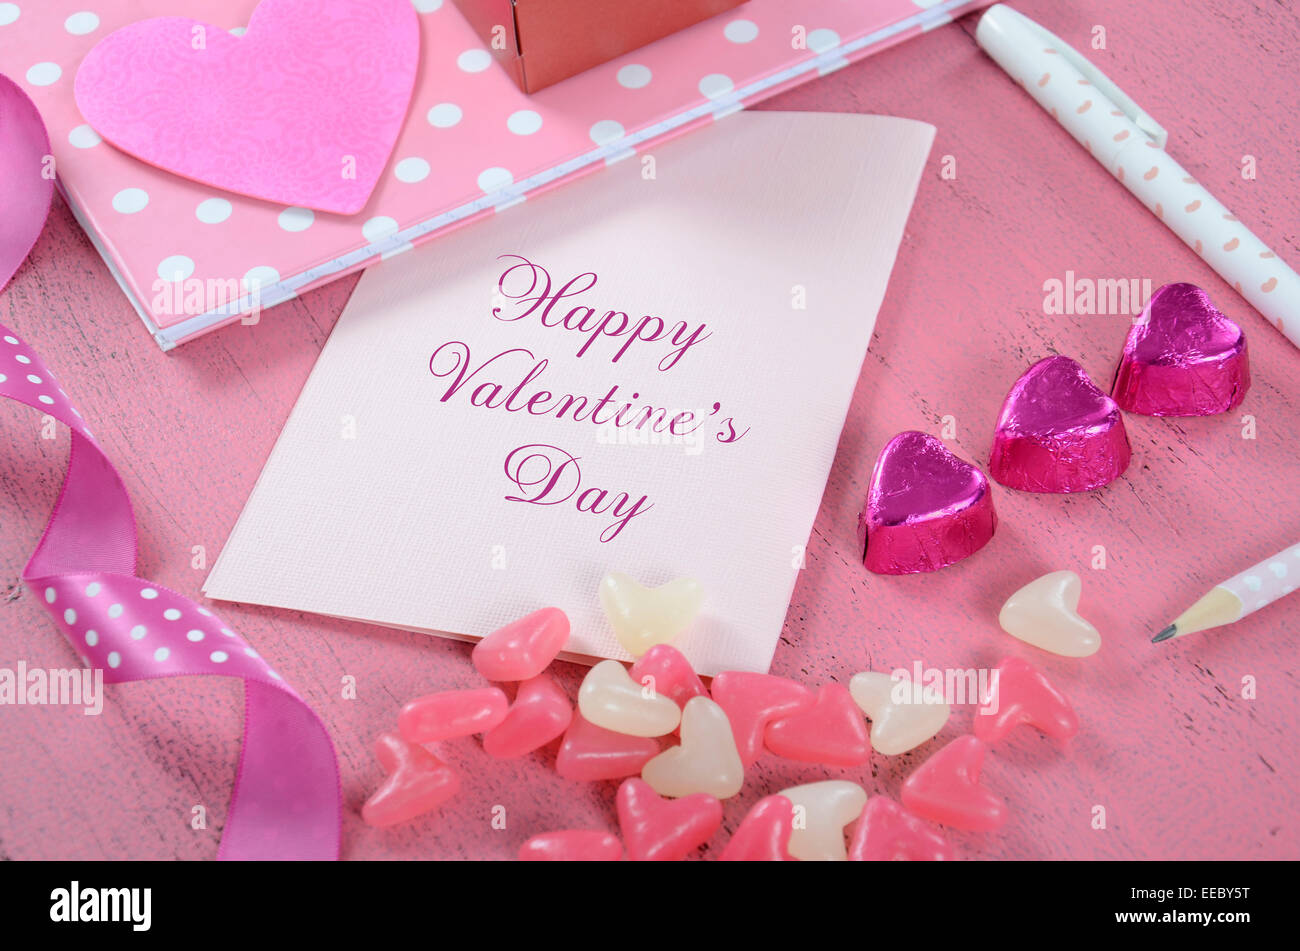 Schreiben Liebesbriefe und Karten für Happy Valentines Day mit Herz Form Candy auf rosa shabby chic Holz Hintergrund - Closeup. Stockfoto